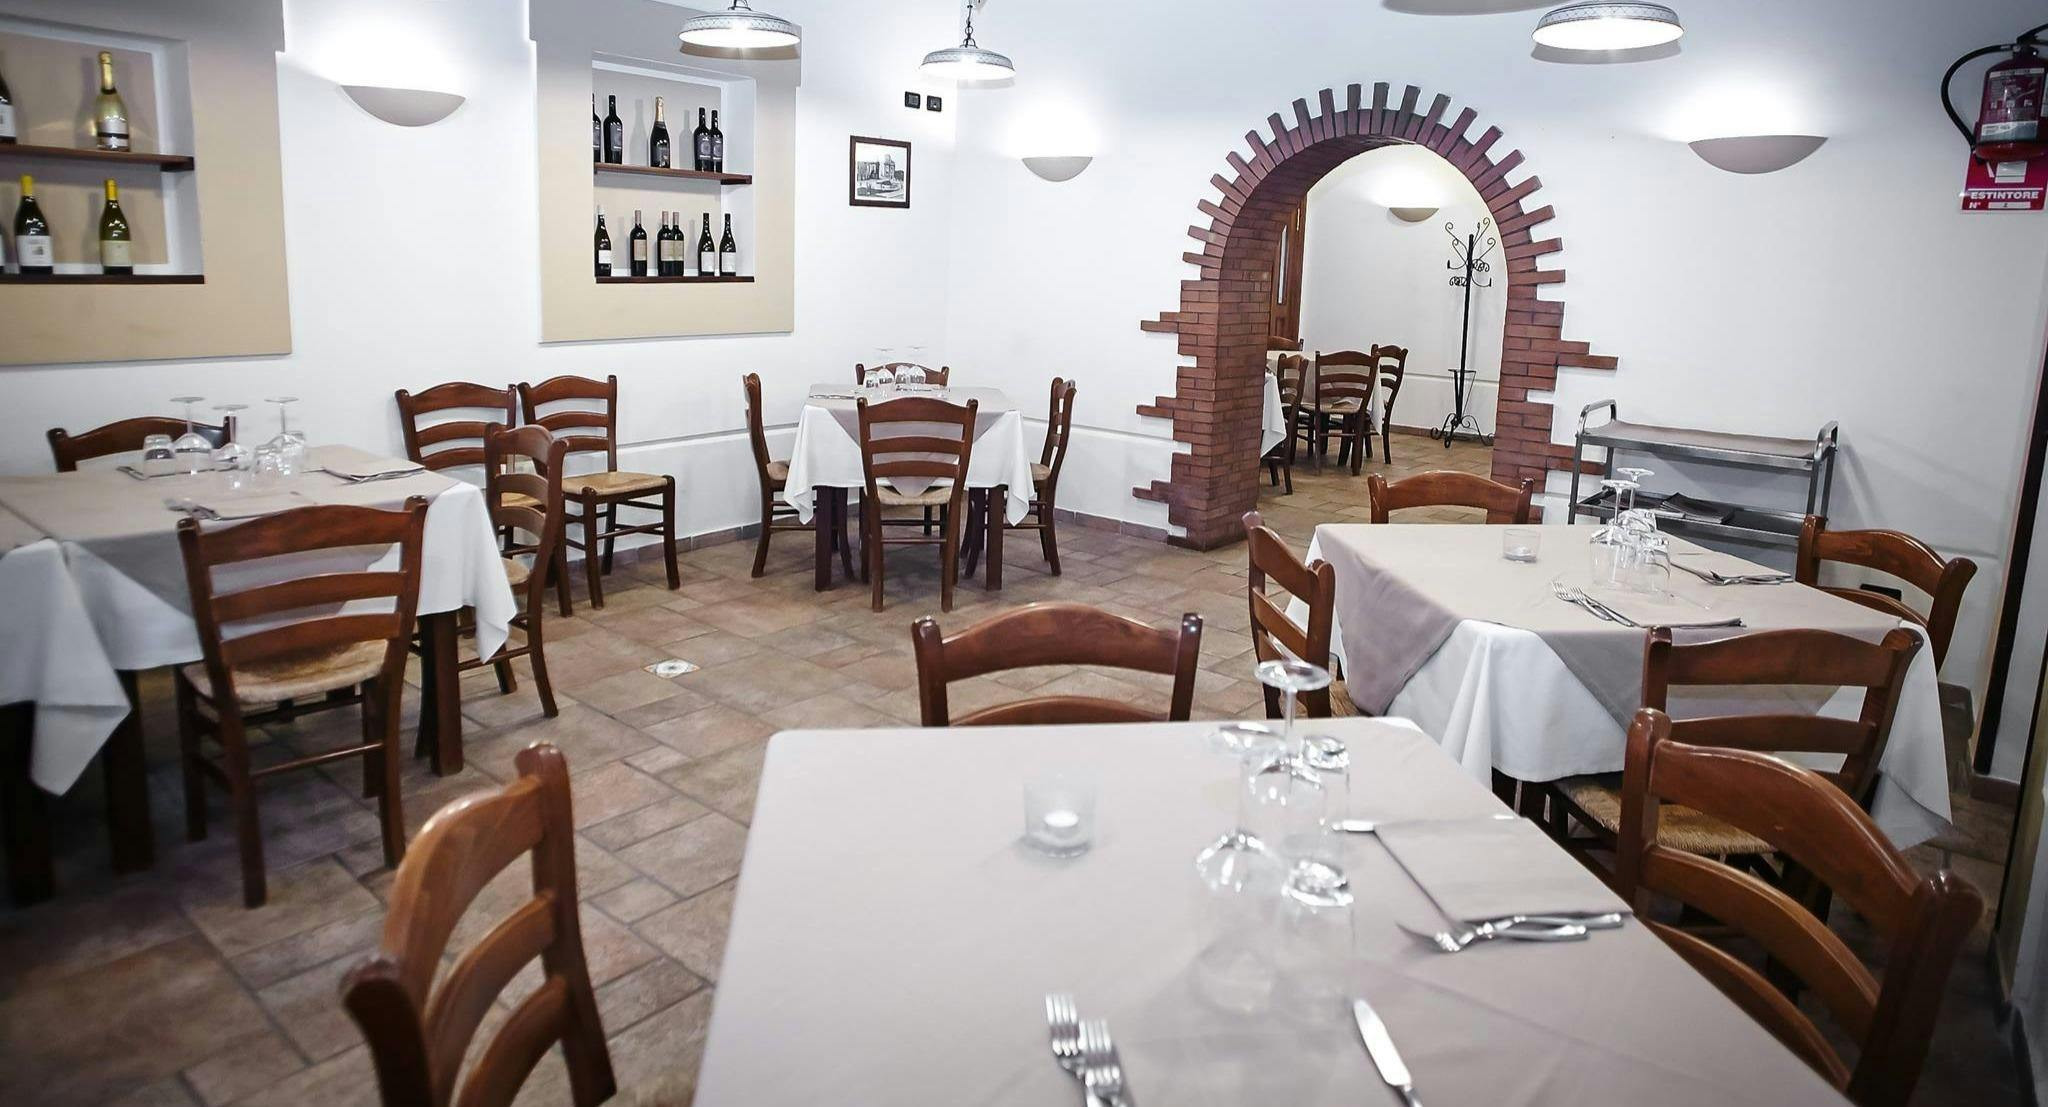 Photo of restaurant Franco Ristorante Pizzeria in Mondello, Palermo